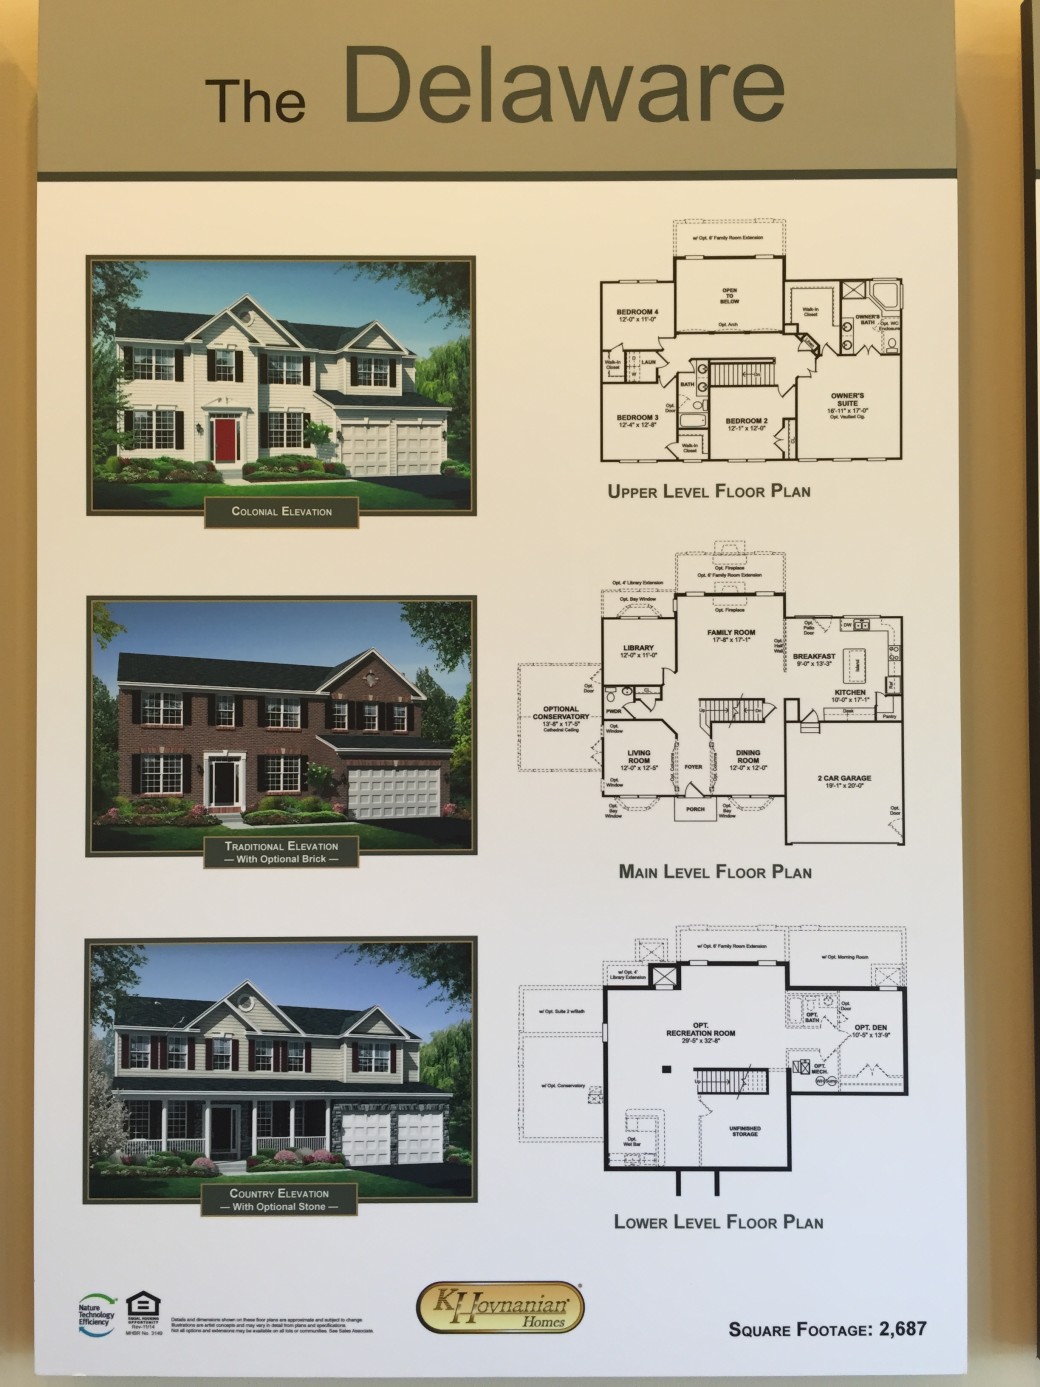 The Delaware home design.